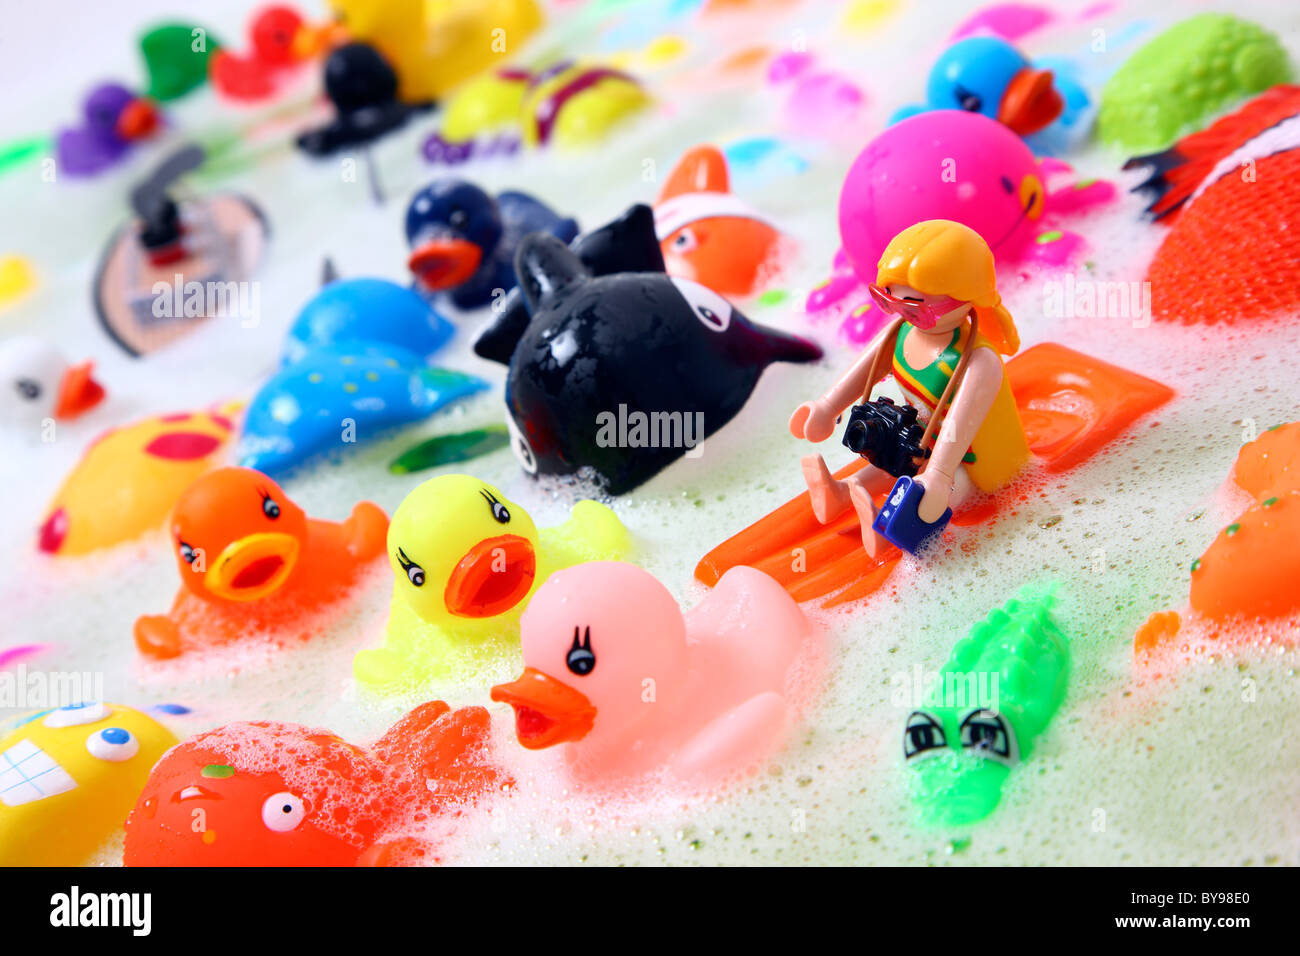 bath figures